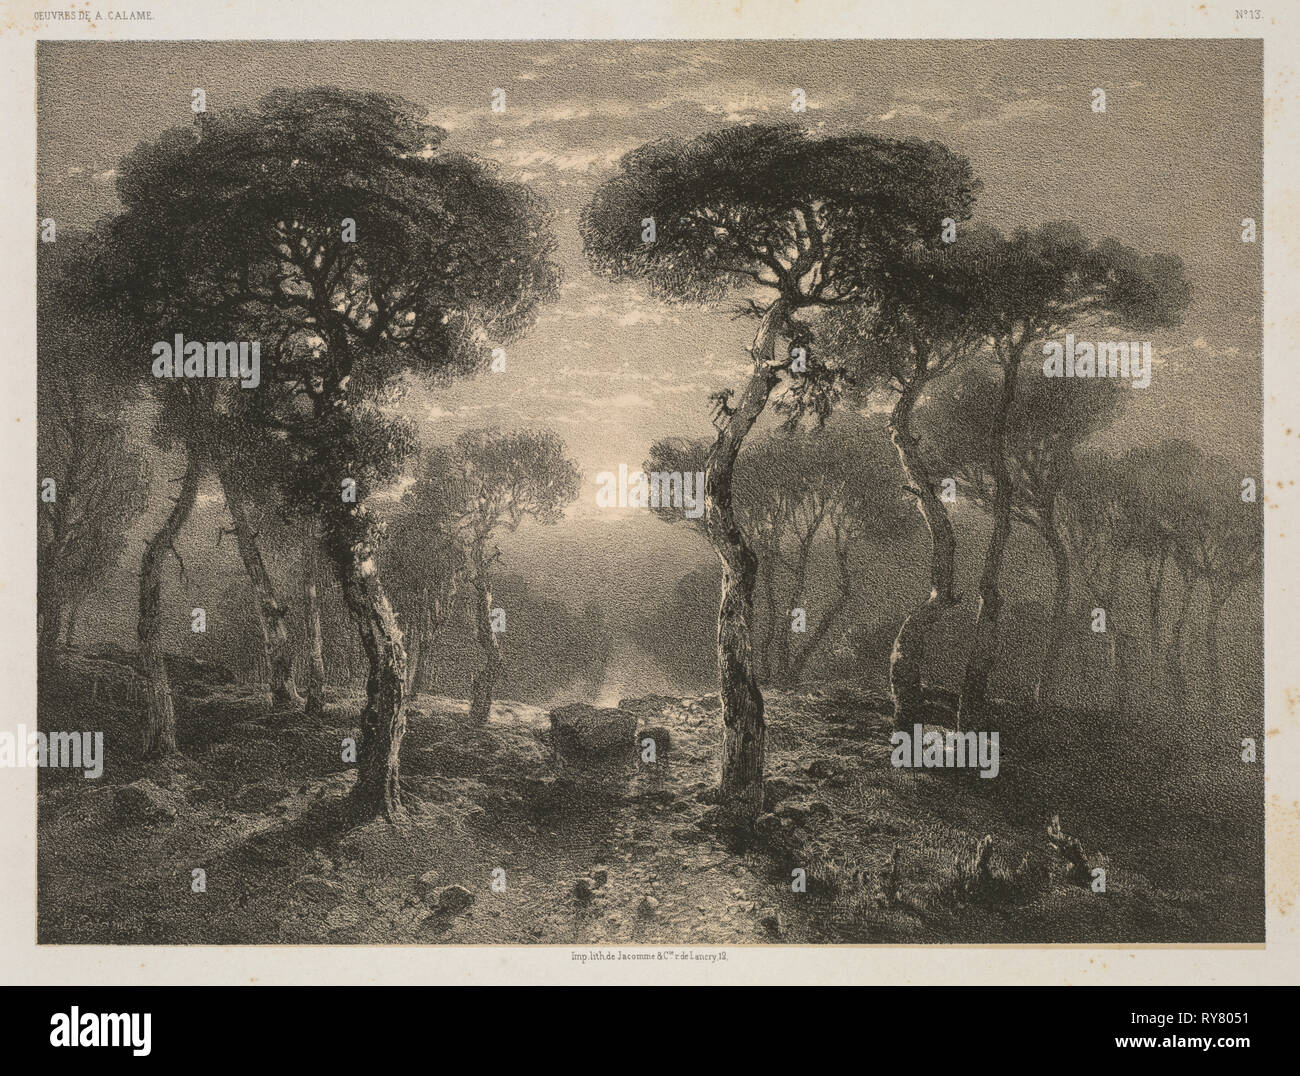 Oeuvres de A. Calame, n. 13: Forêt de Sierre en Valais, 1843 (pubblicato 1851). Jacomme & Cie. R. de Lancry, 12, Parigi, Alexandre Calame (Swiss, 1810-1864), F. Delarue, r. J.J. Rouseau, 10, Parigi. Litografia; foglio: 36,7 x 54 cm (14 7/16 x 21 1/4 in.); immagine: 17,5 x 23,8 cm (6 7/8 x 9 3/8 in Foto Stock